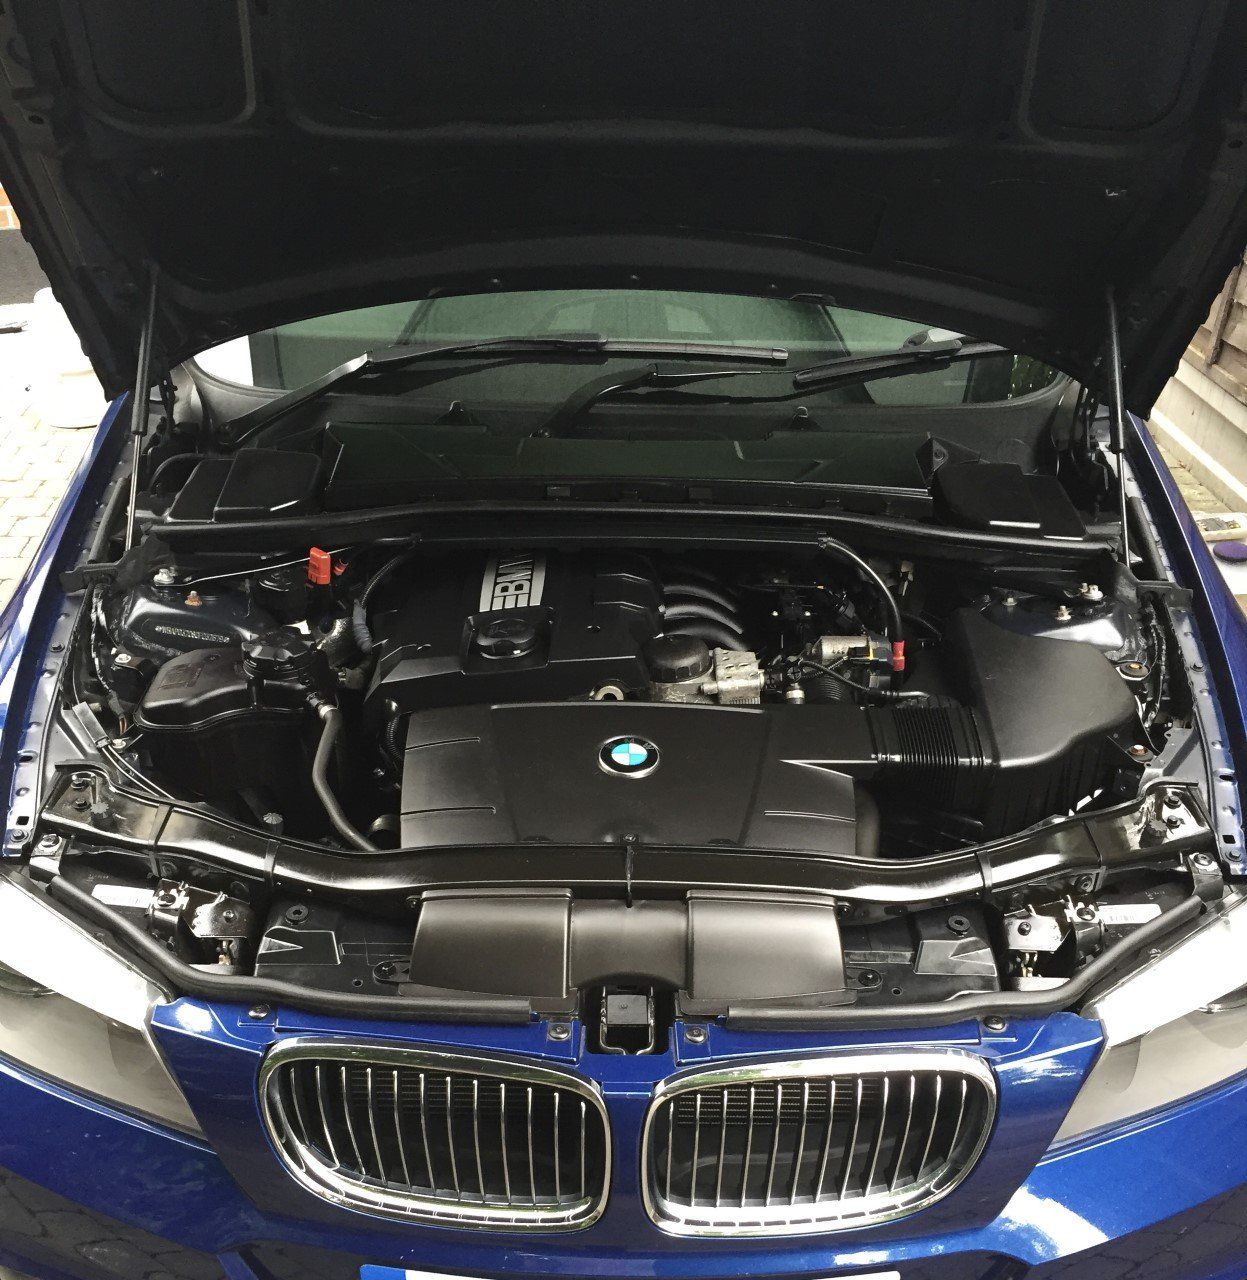 Clean BMW Engine